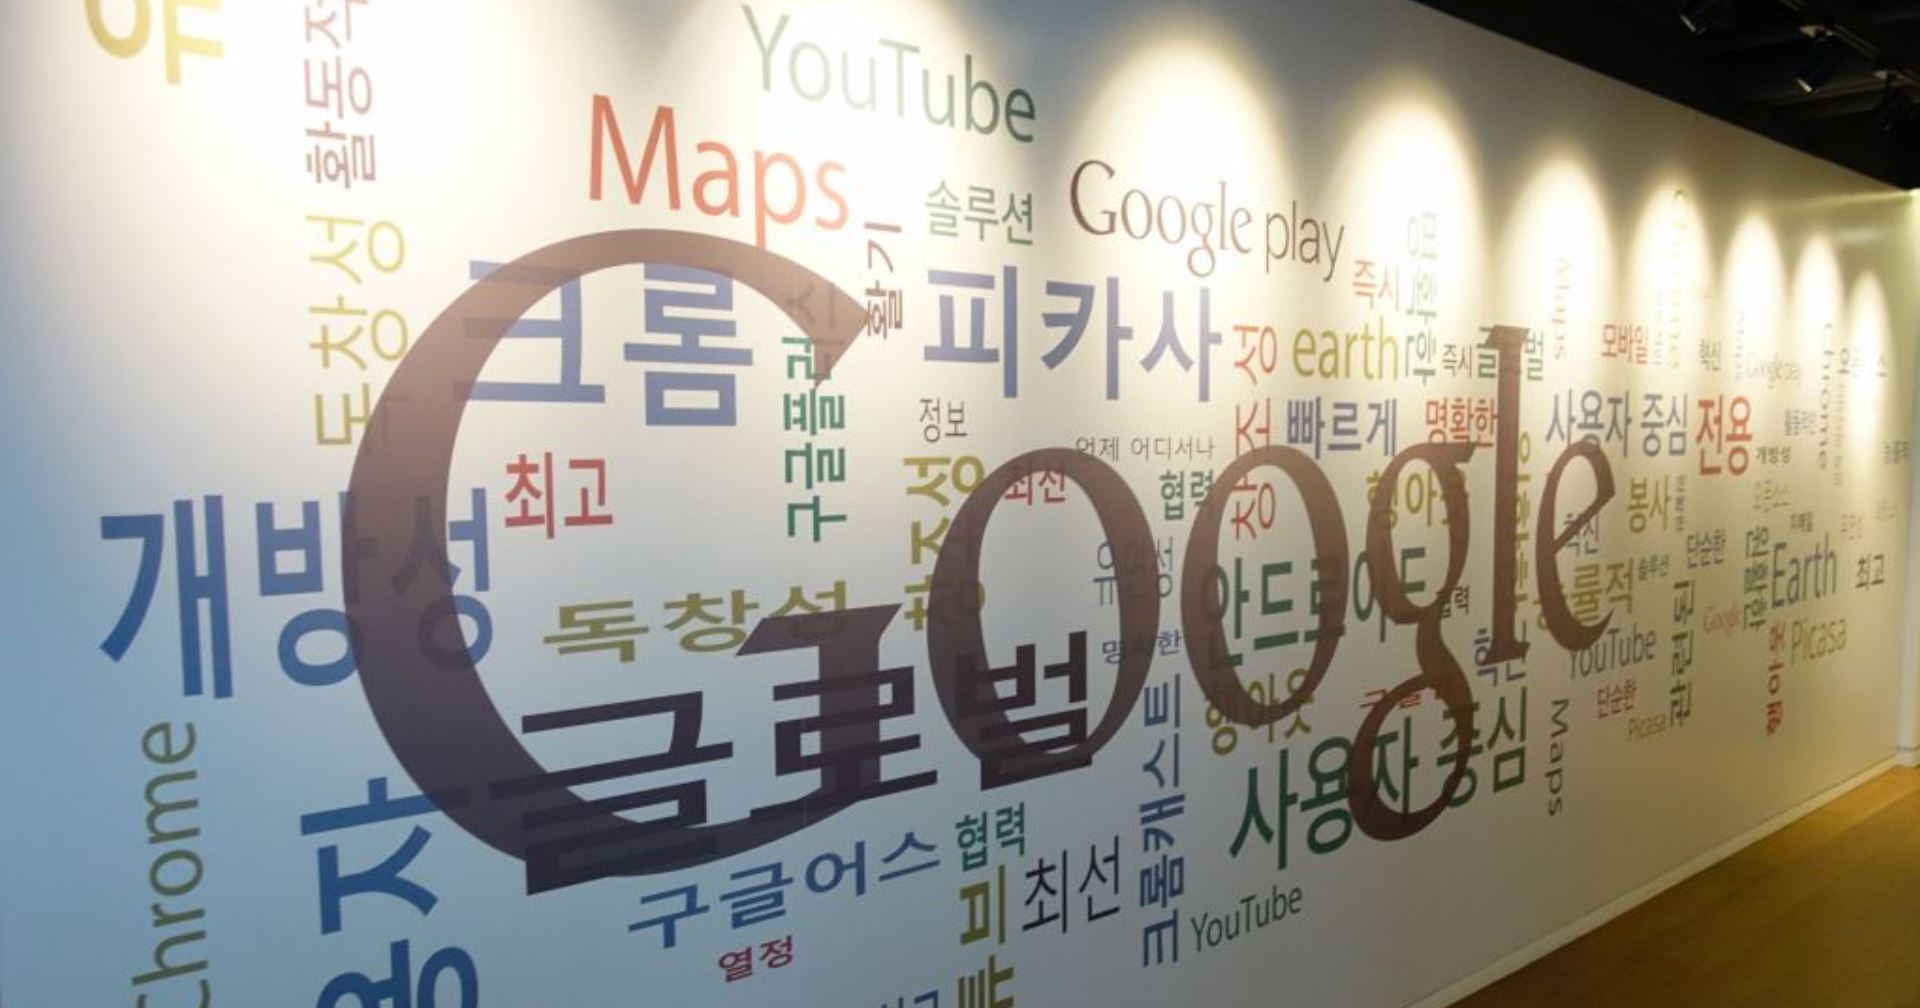 เกาหลีใต้สั่งปรับ Google 1,000 ล้านบาทกรณีผูกขาดตลาด กระทบเจ้าของแพลตฟอร์มในประเทศ